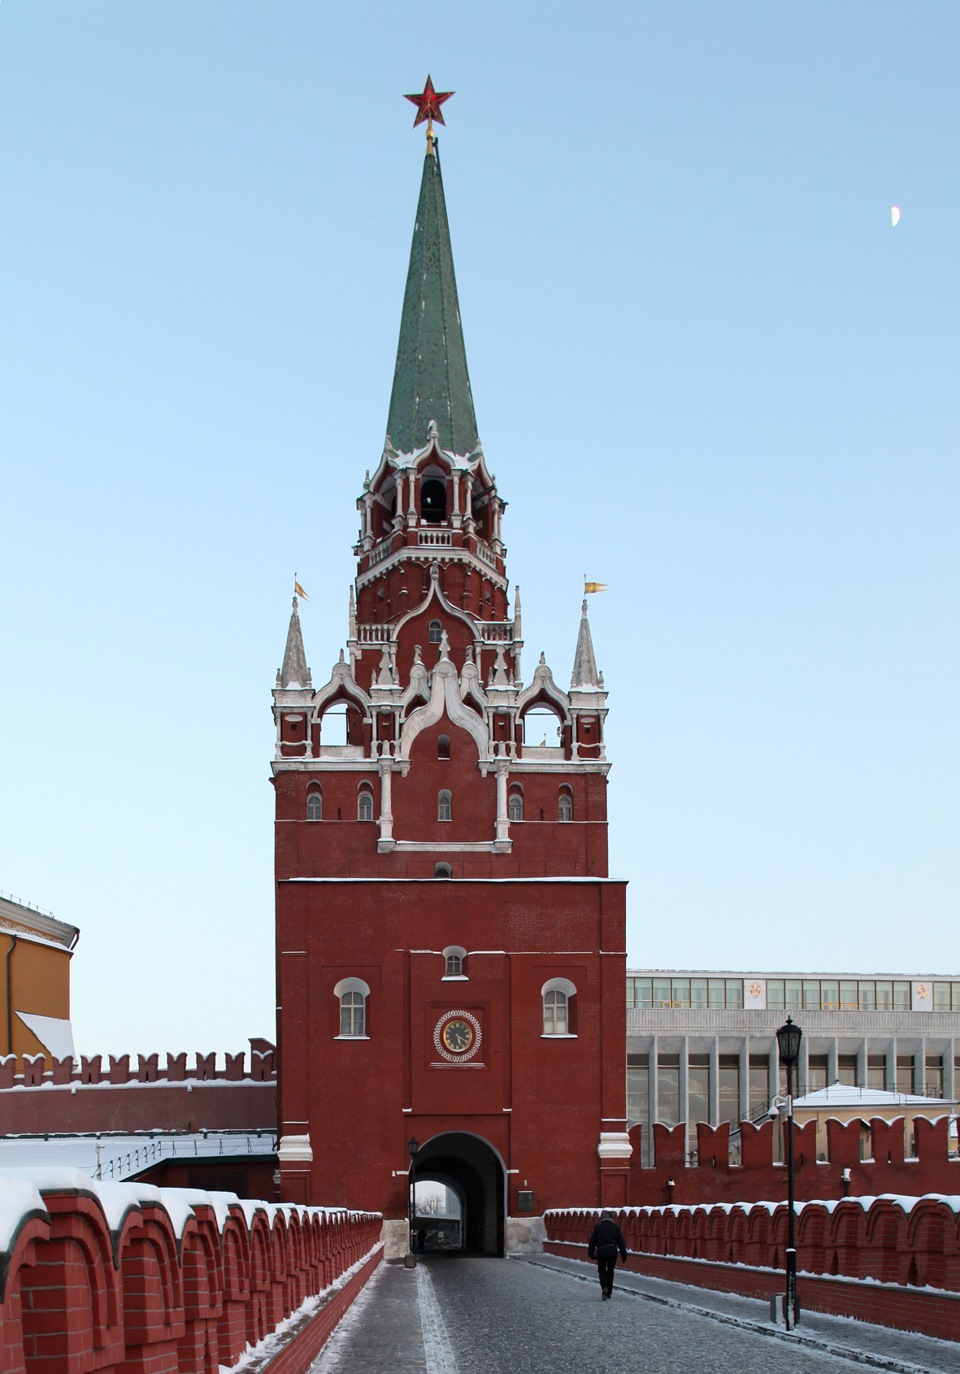 История спасской башни московского кремля